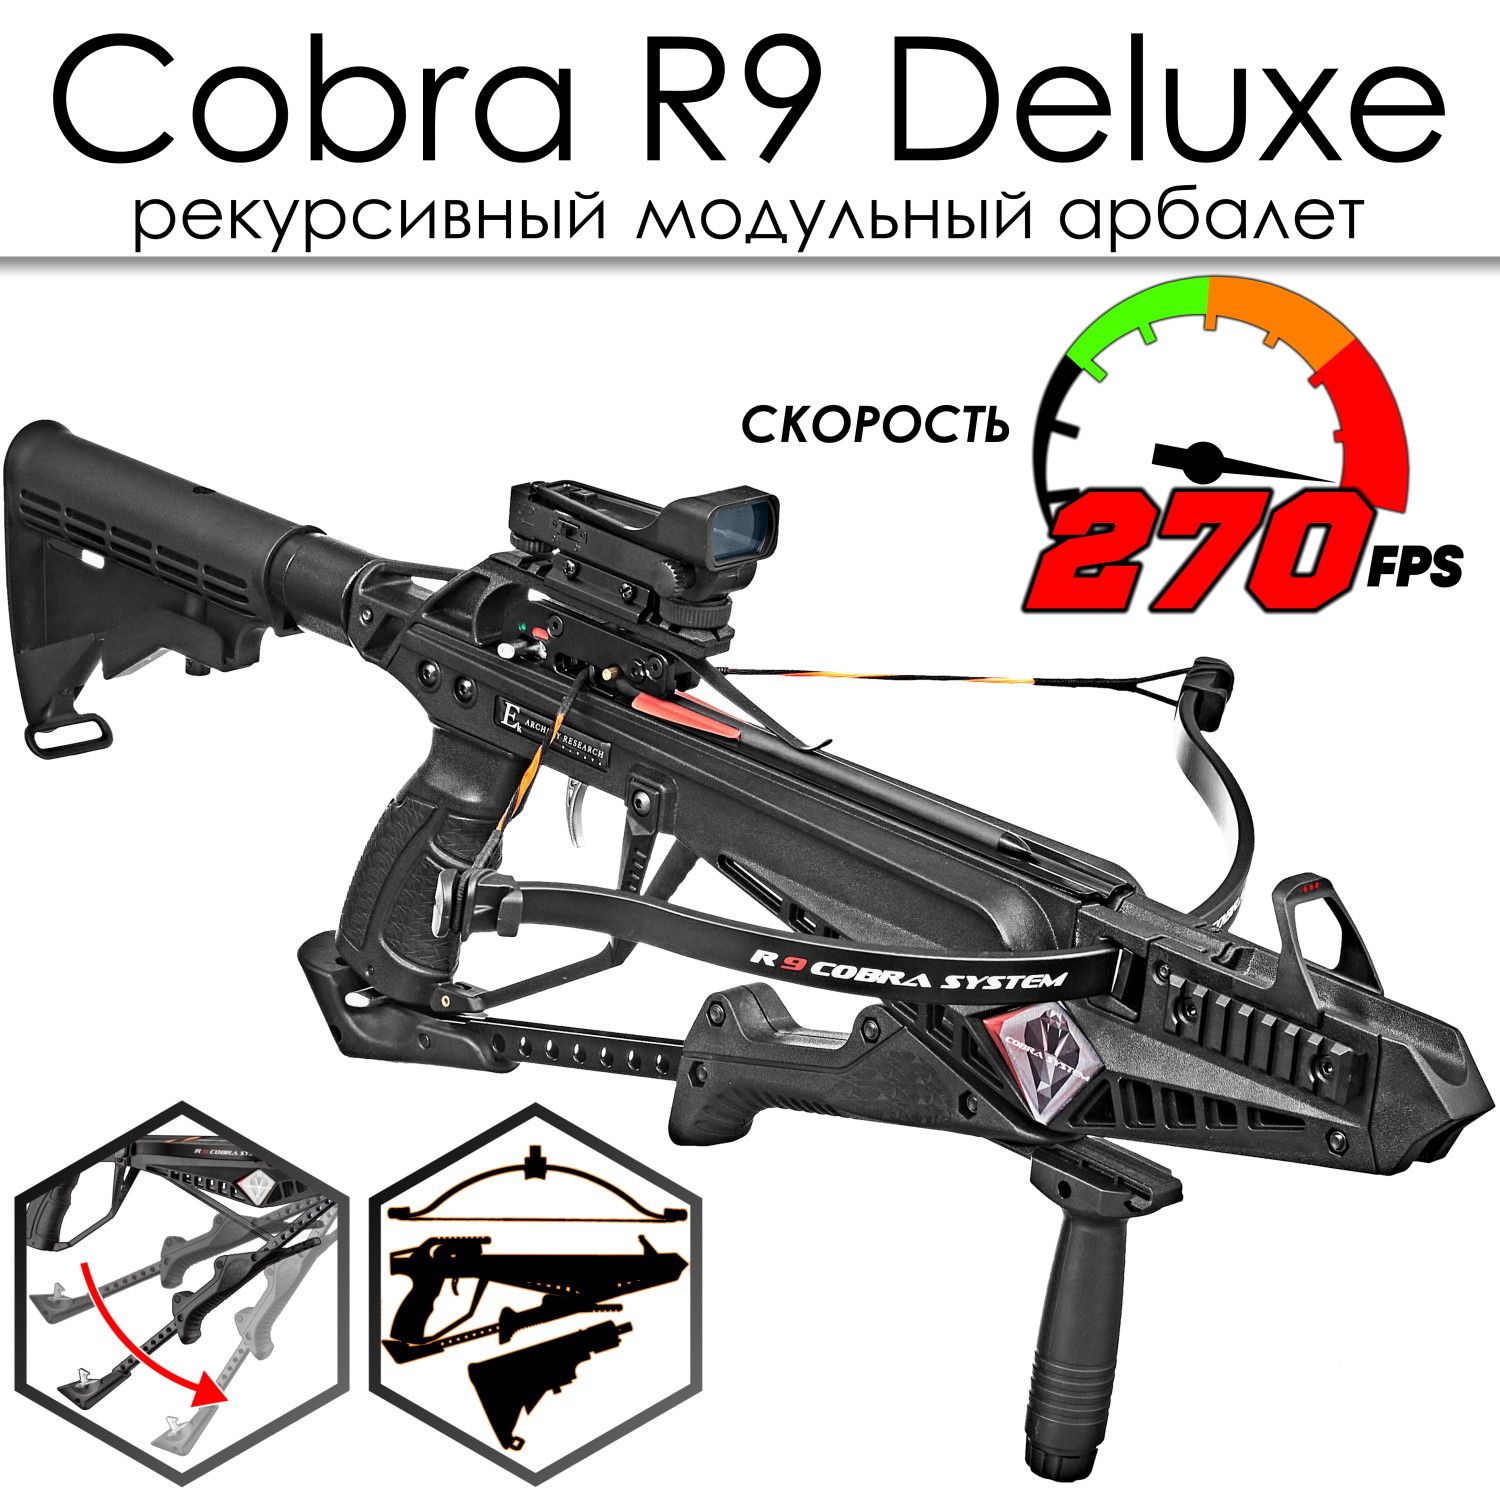 Ek cobra system r9. Арбалет Cobra r9 Deluxe. Cobra System r9 Deluxe.